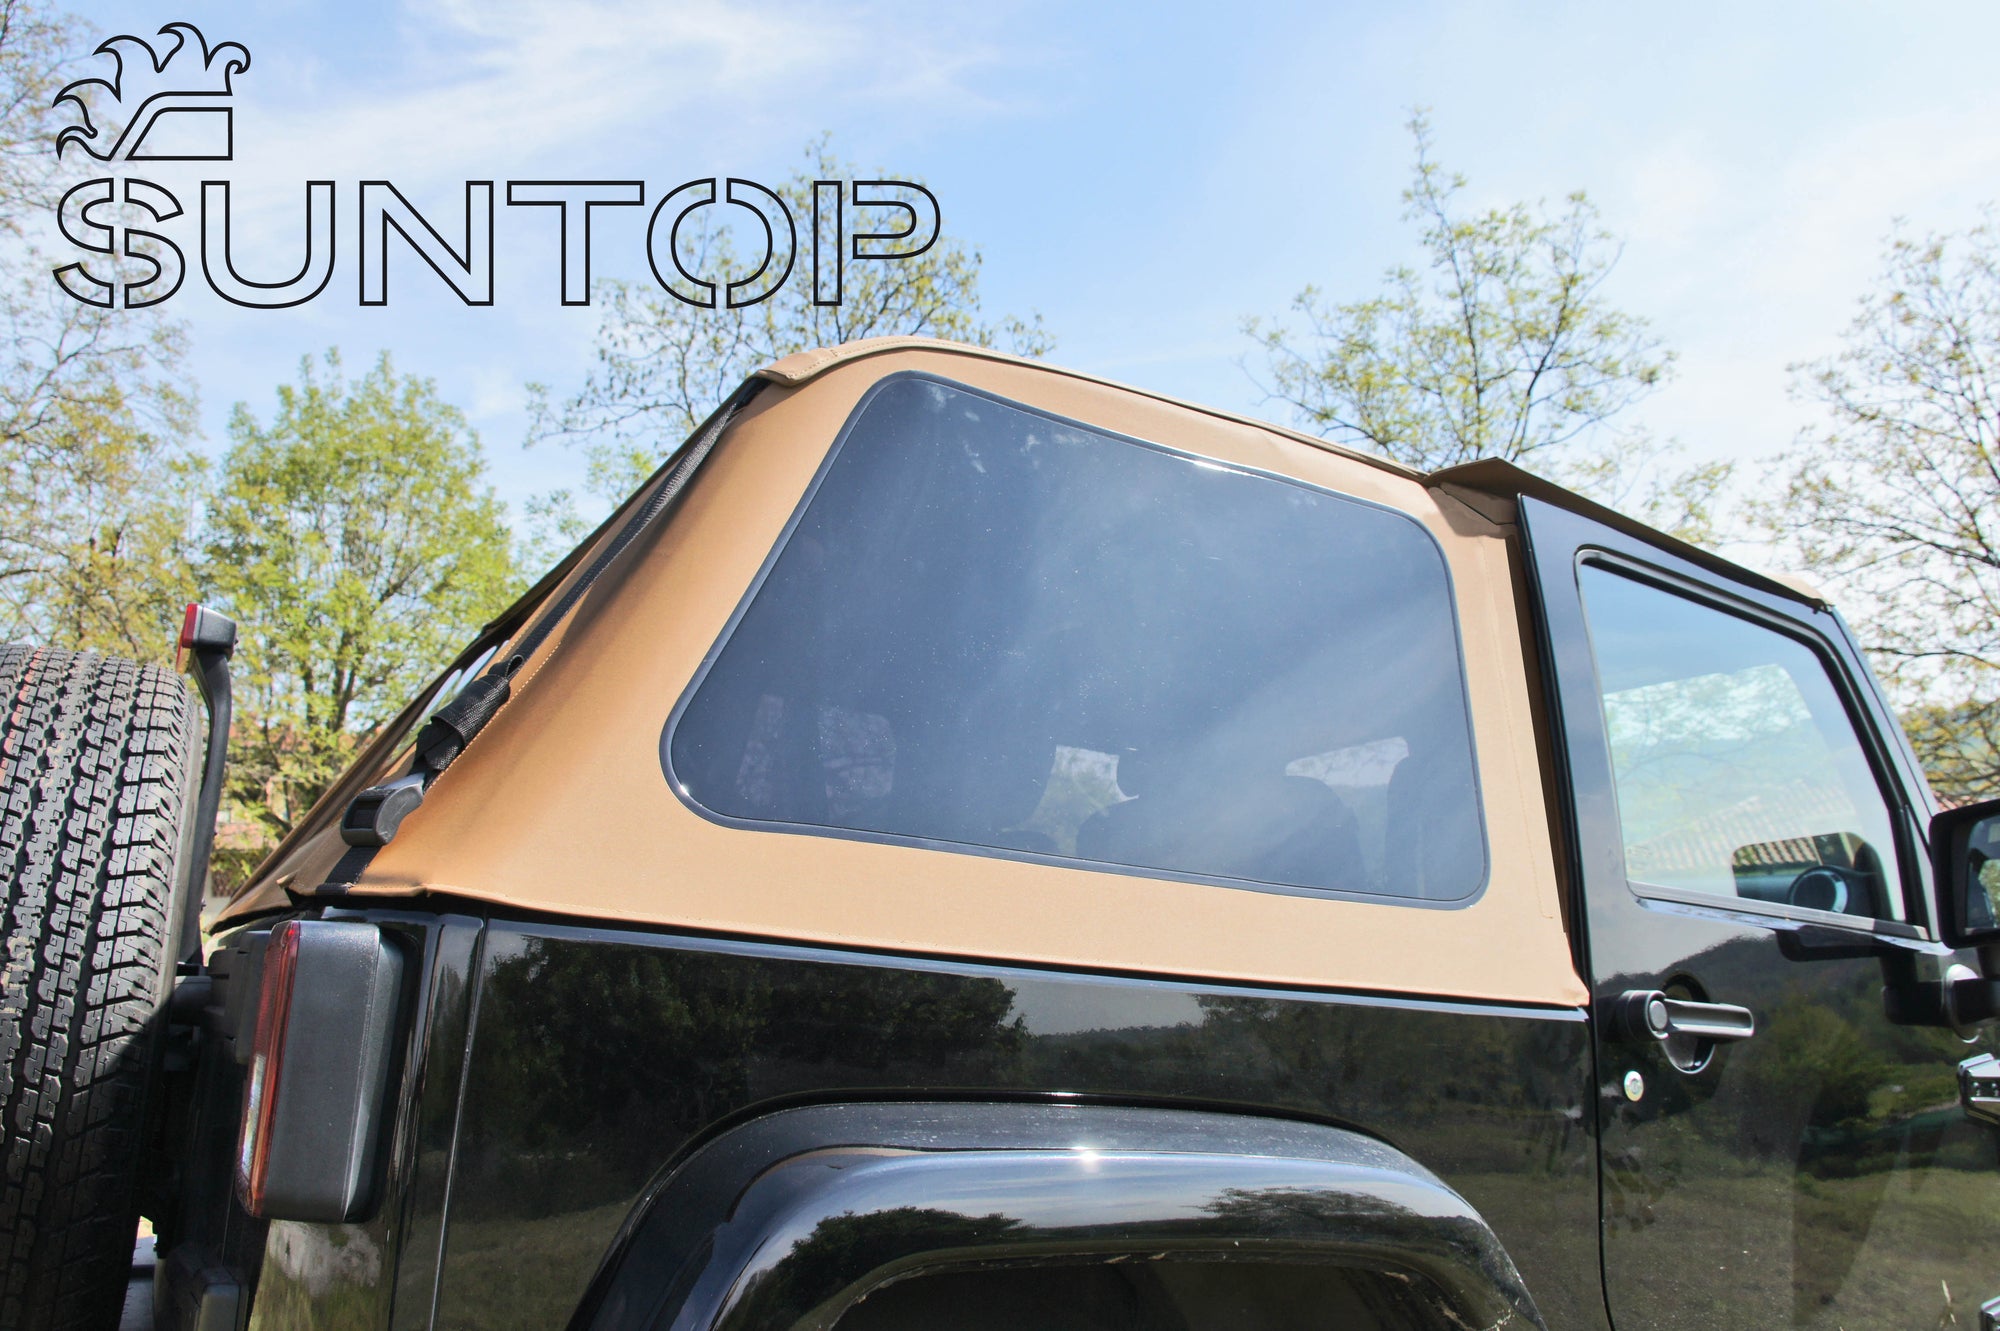 JK Trucktop - The Suntop